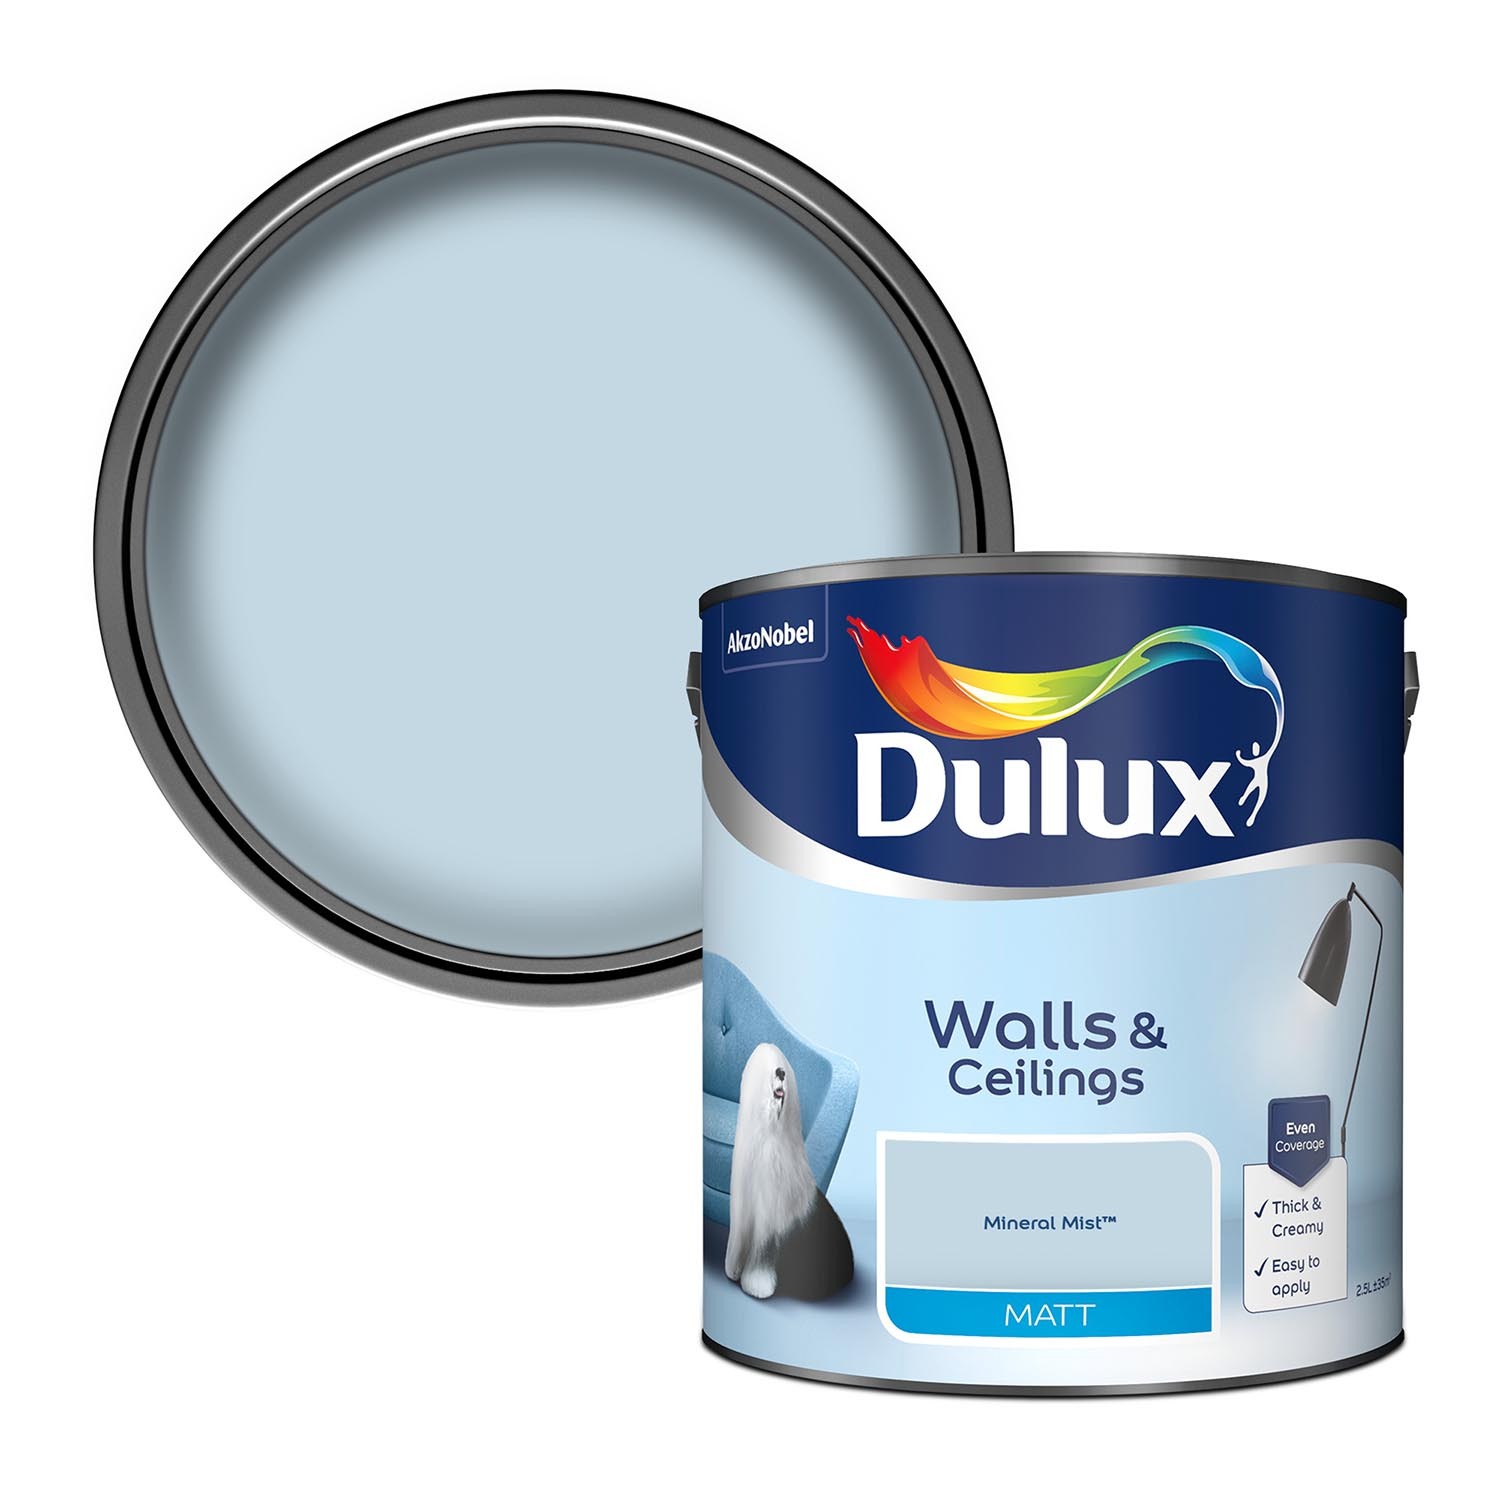 Dulux Walls & Ceilings Mineral Mist Matt Emulsion Paint 2.5L Image 1